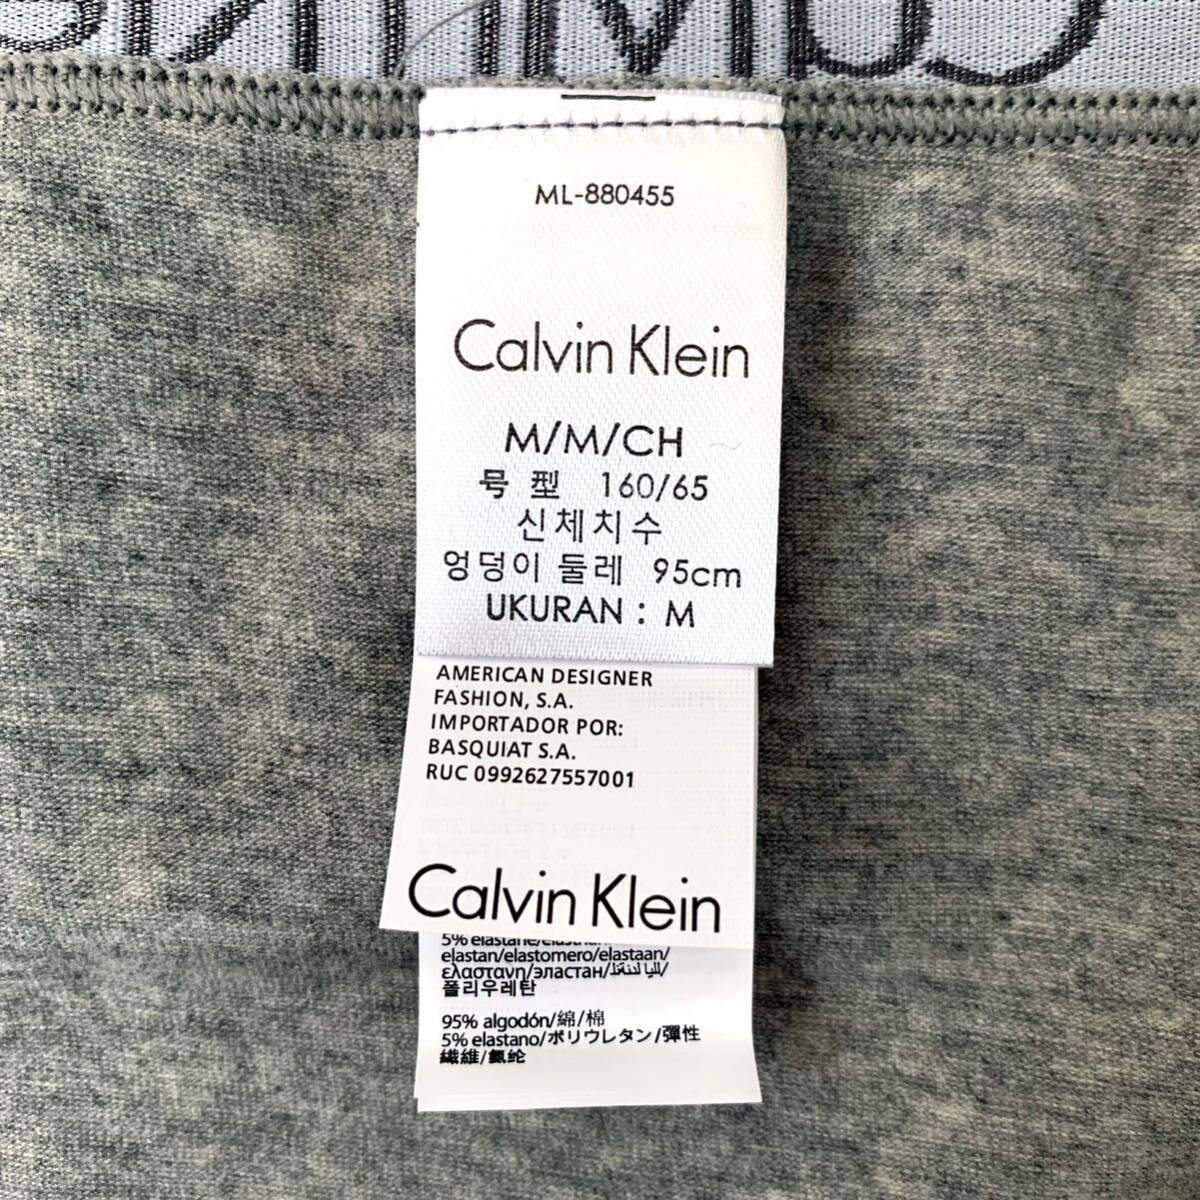 Calvin Klein アンダーウェア コットンビキニ Mサイズ 3枚セット レディース 送料無料 最短発送 下着 女性下着 ショーツ パンツ パンティーの画像4